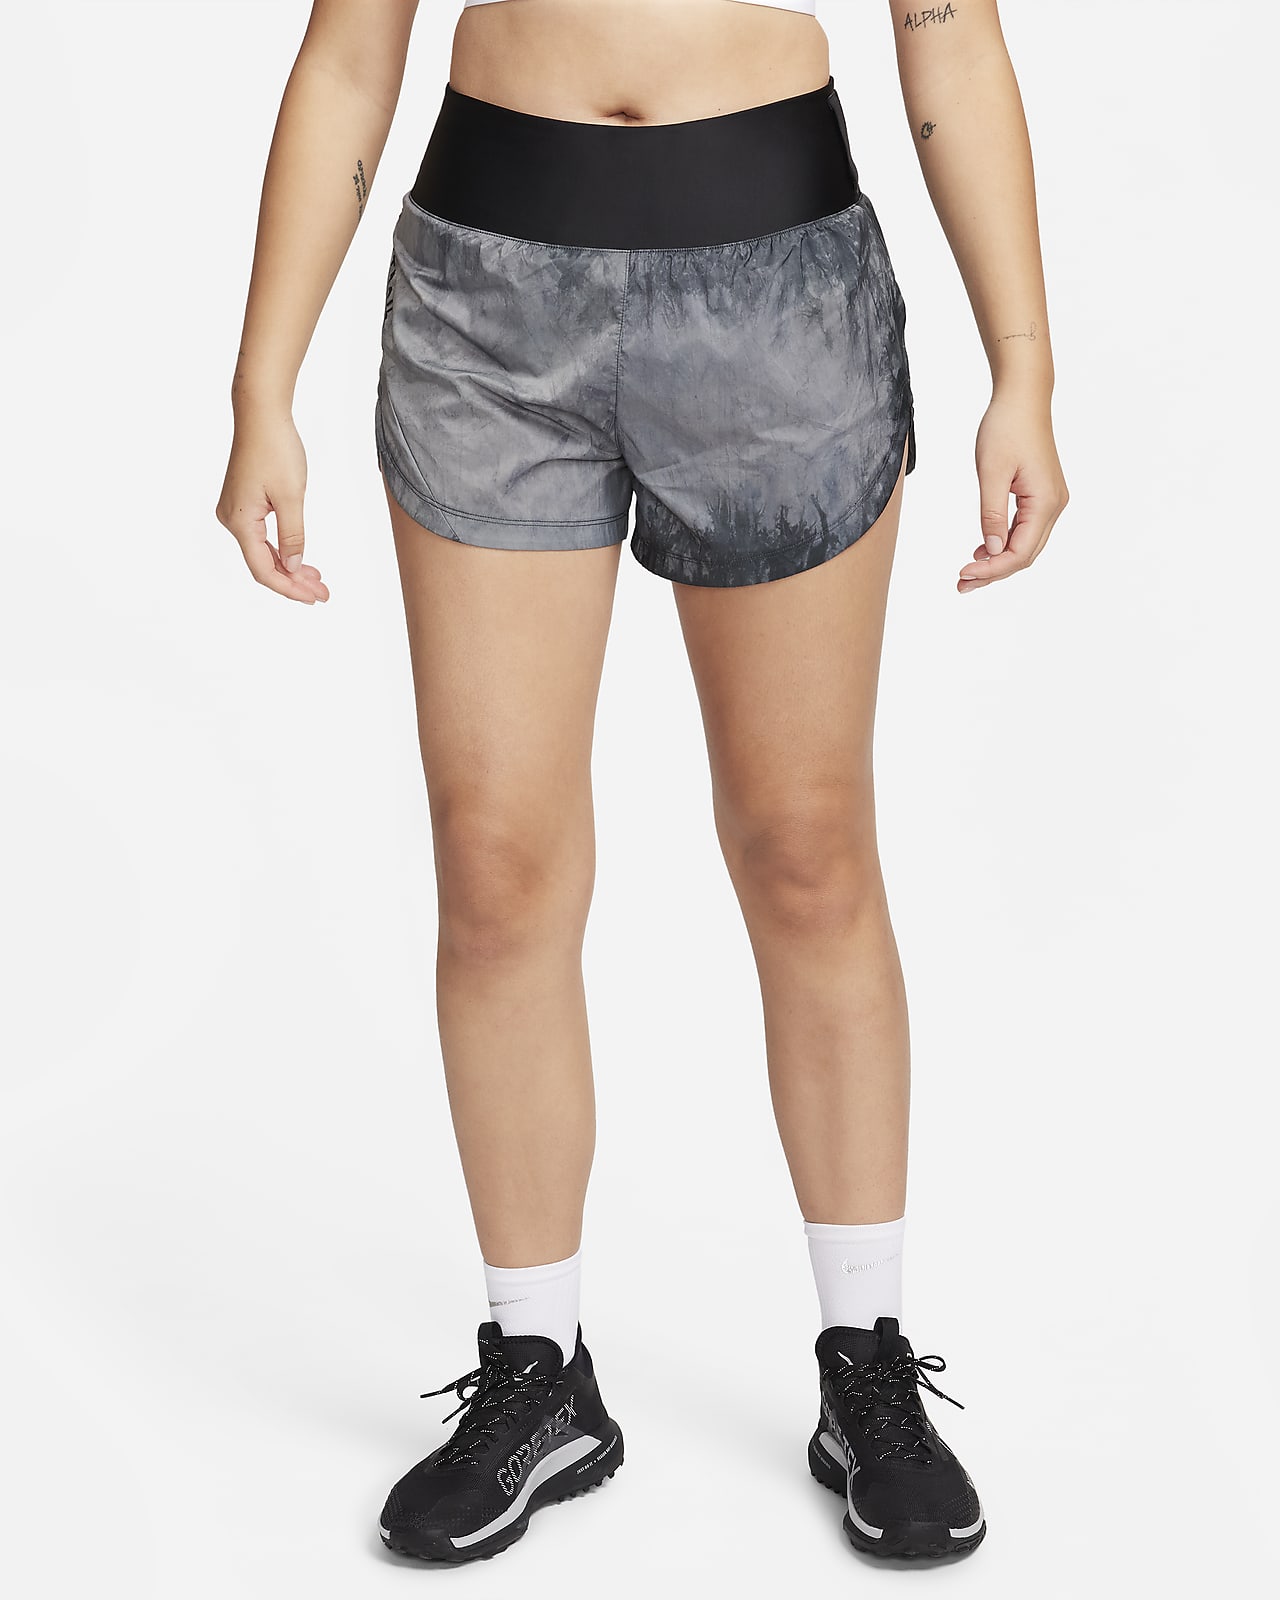 Dámské 8cm běžecké kraťasy Nike Trail Repel se středně vysokým pasem a všitými kalhotkami